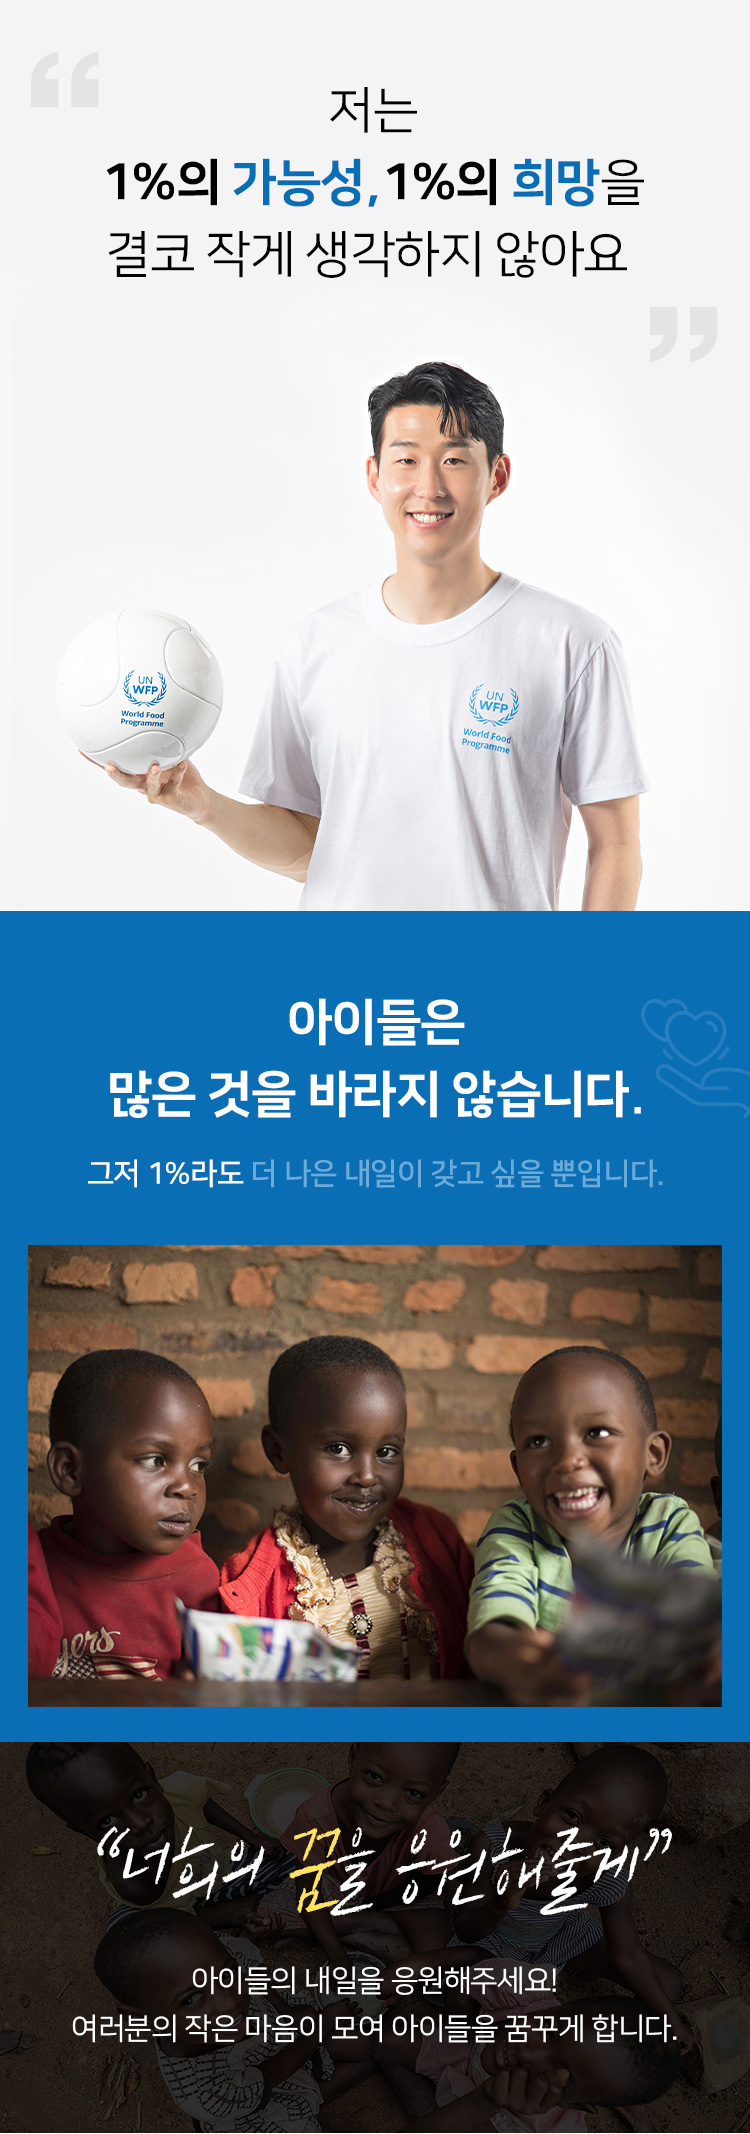 손흥민 선수는 WFP의 현재 글로벌 친선대사입니다